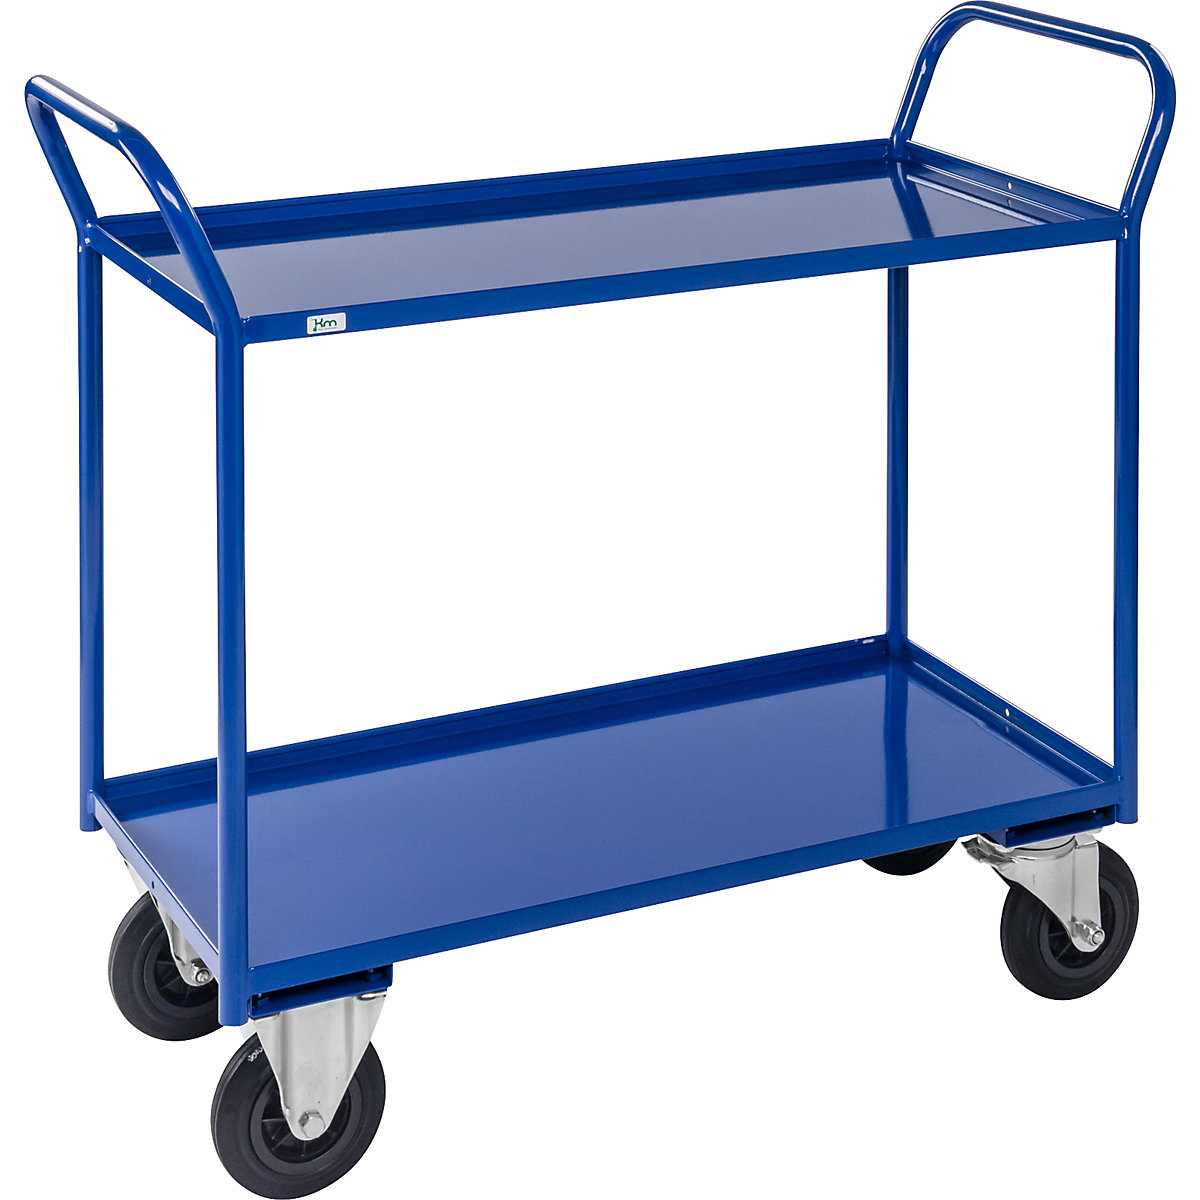 Stolový vozík KM41 – Kongamek, 2 poschodia s ohranením, d x š x v 1070 x 550 x 1000 mm, modrá, 2 otočné a 2 pevné kolieska, od 5 ks-4